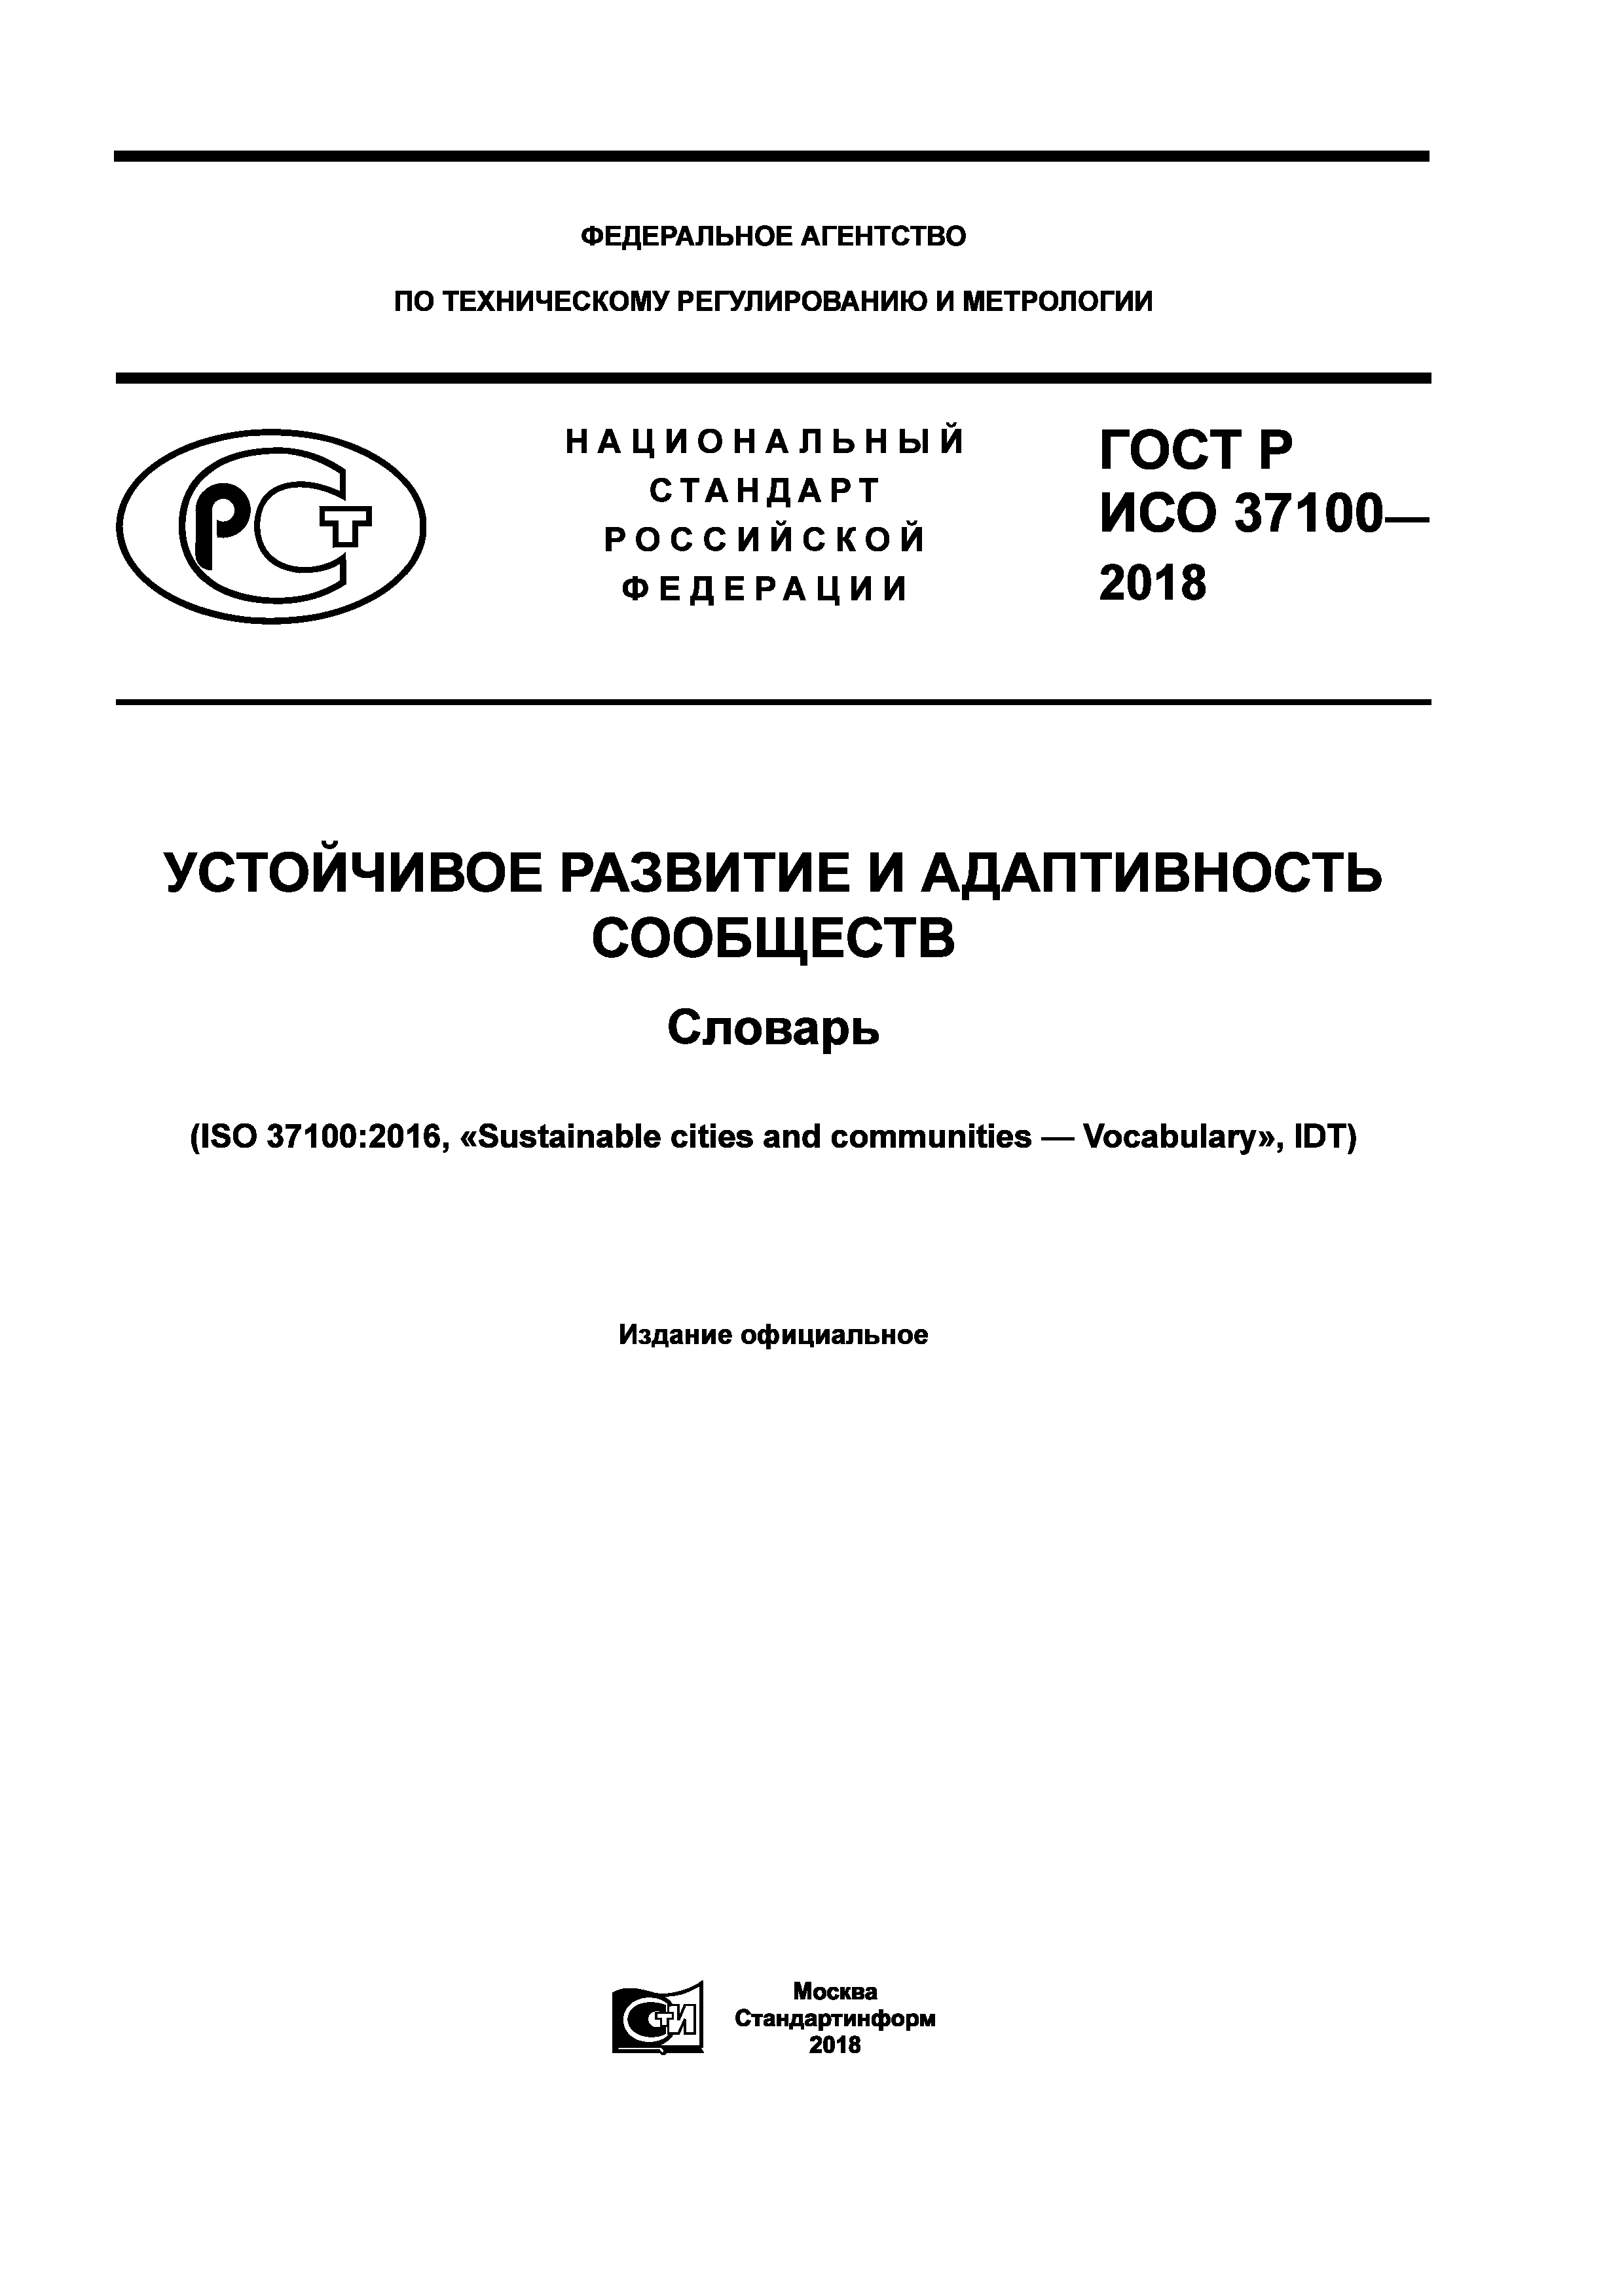 ГОСТ Р ИСО 37100-2018